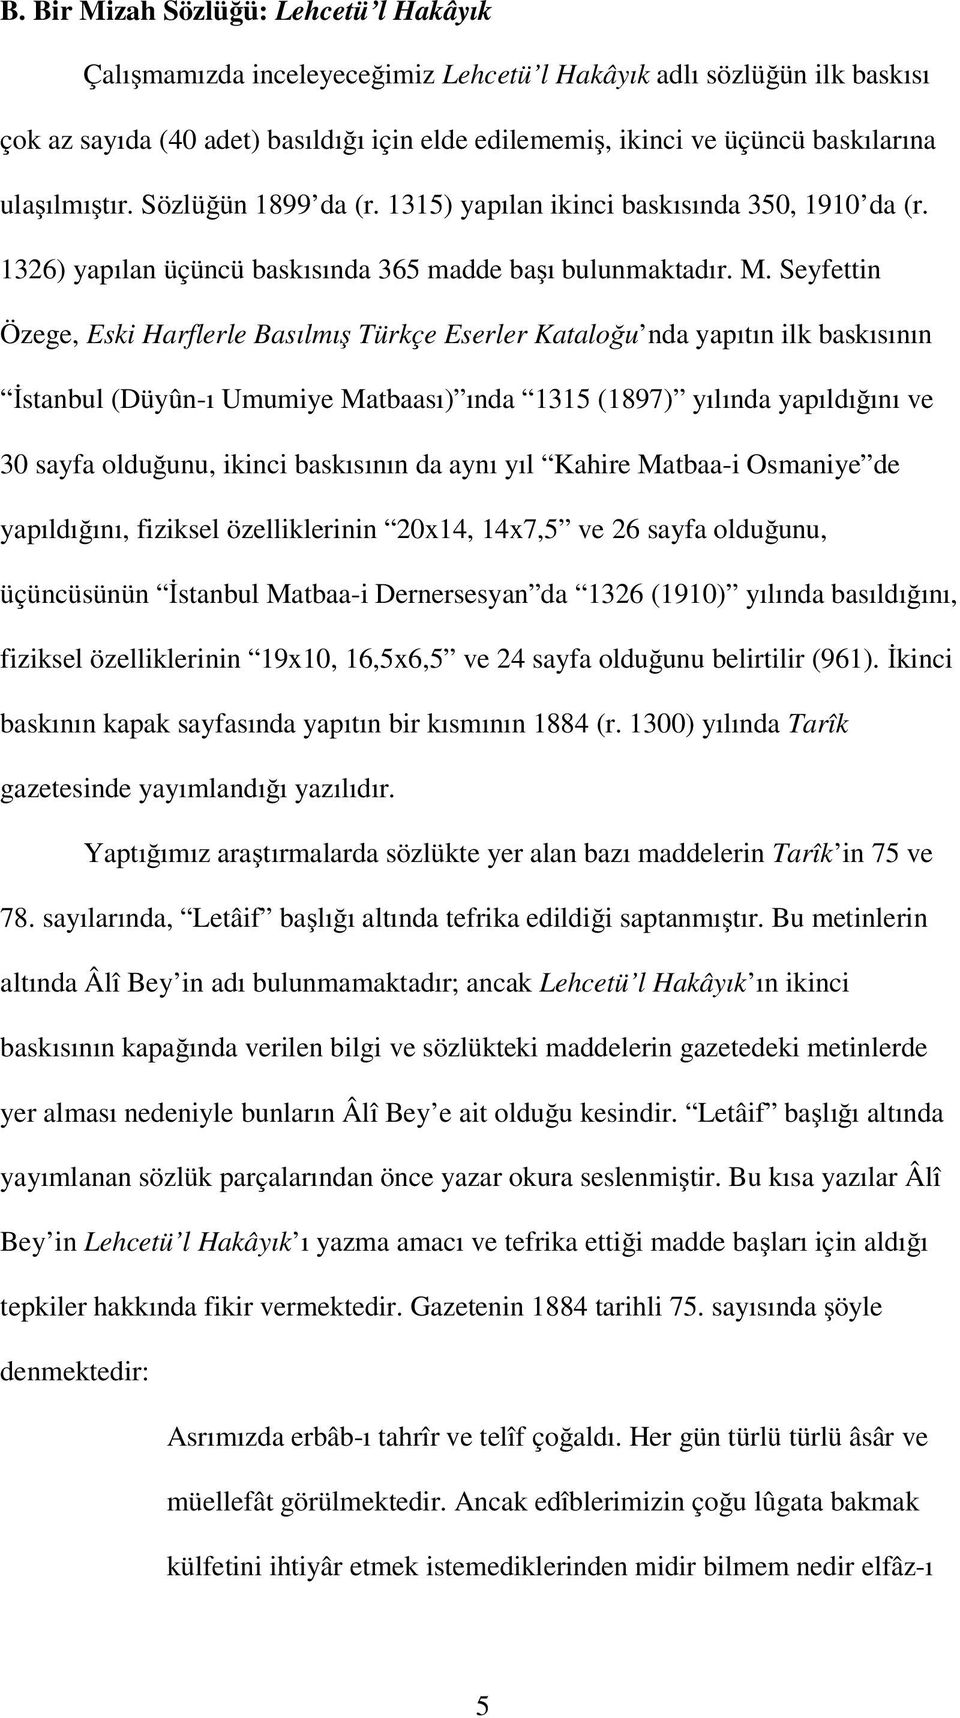 Seyfettin Özege, Eski Harflerle Basılmı Türkçe Eserler Katalo u nda yapıtın ilk baskısının stanbul (Düyûn-ı Umumiye Matbaası) ında 1315 (1897) yılında yapıldı ını ve 30 sayfa oldu unu, ikinci